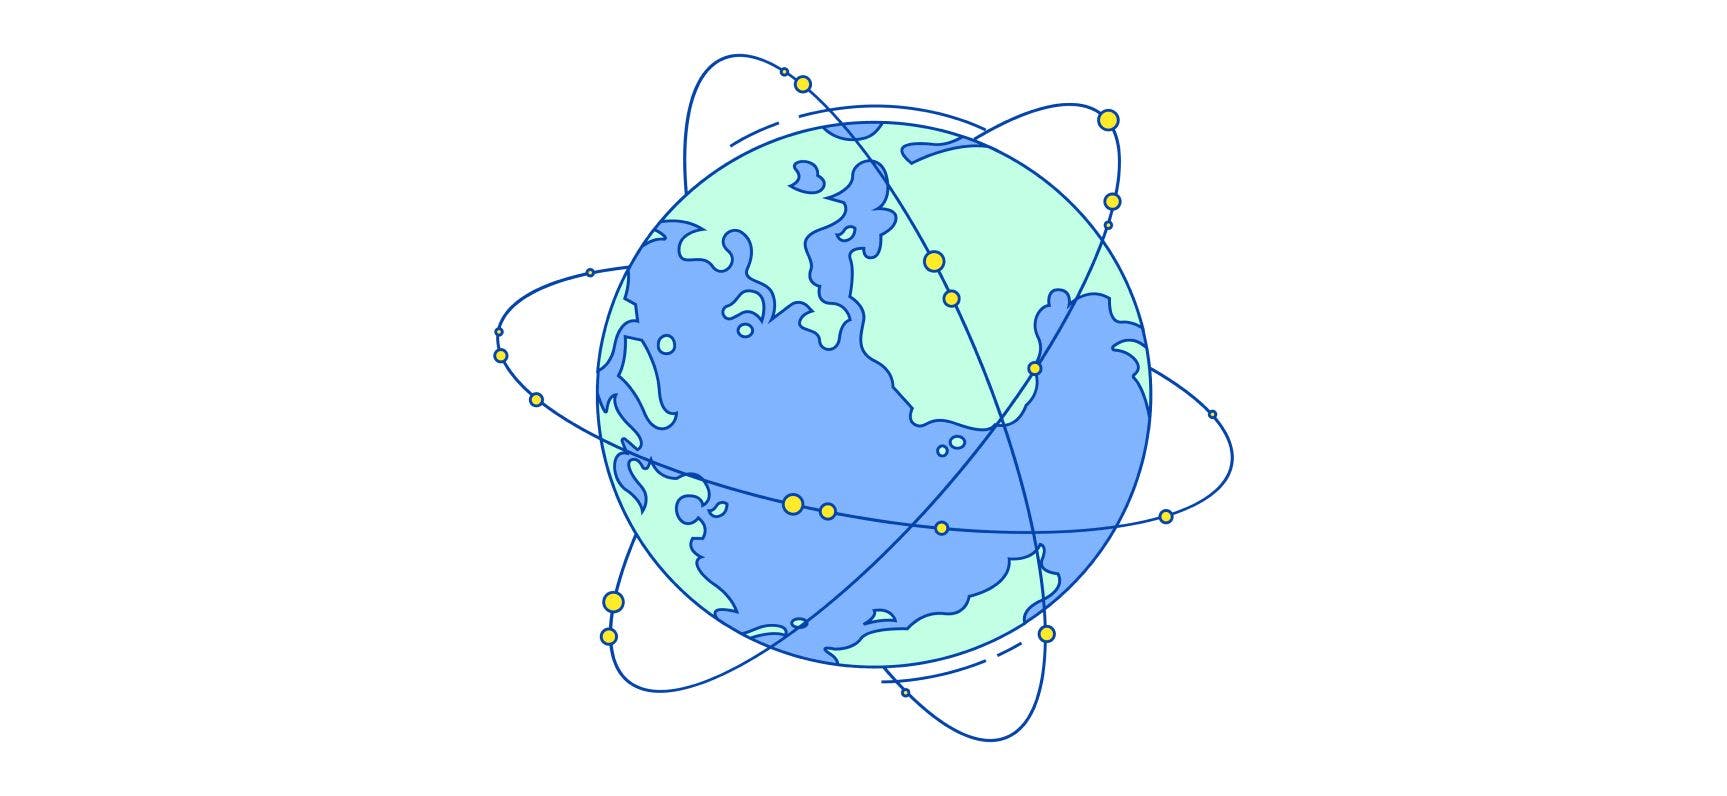 Global maritime network